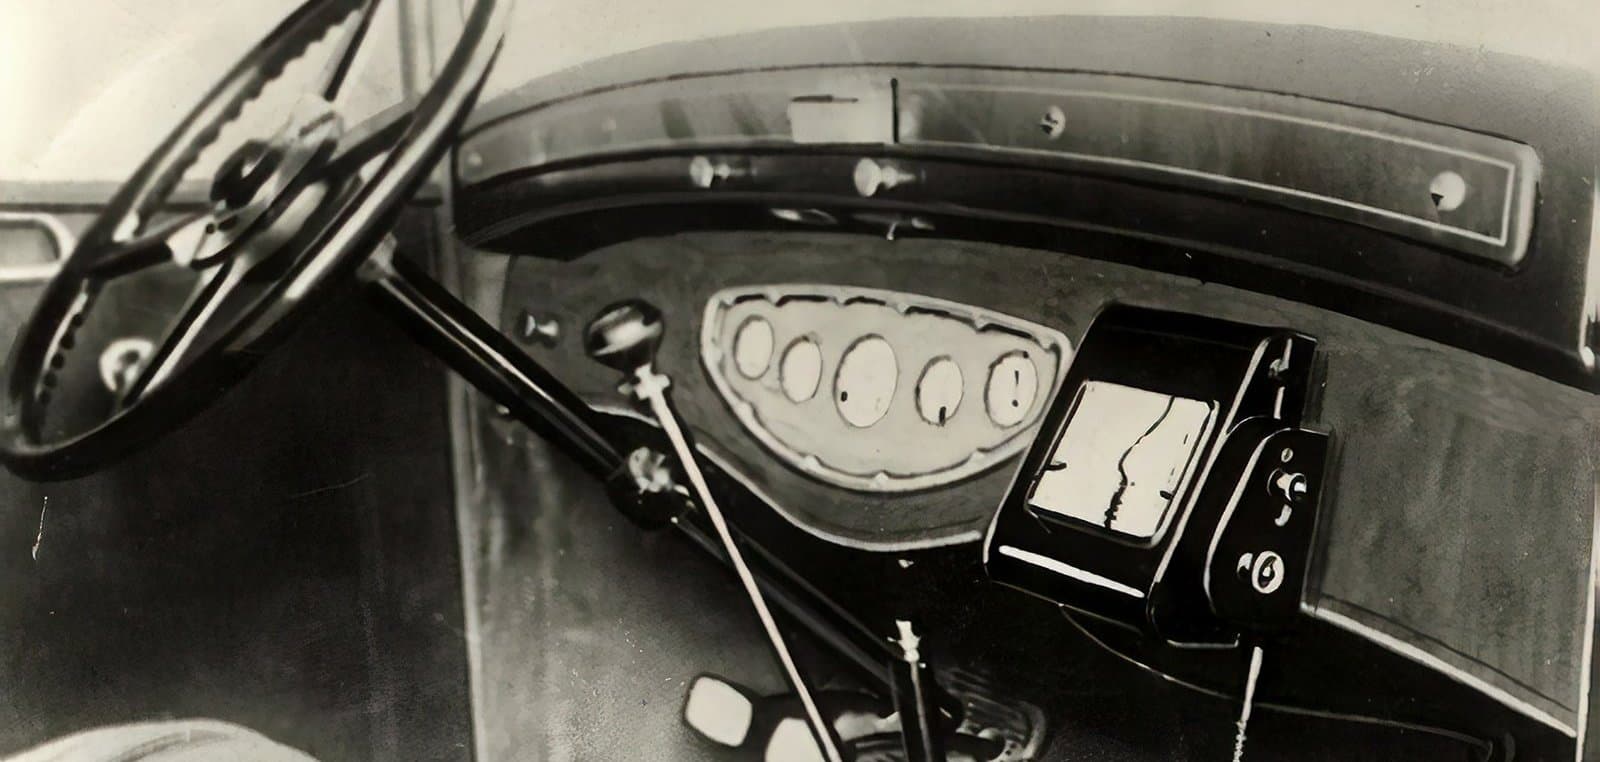 Автомобильные навигаторы доспутниковой эпохи